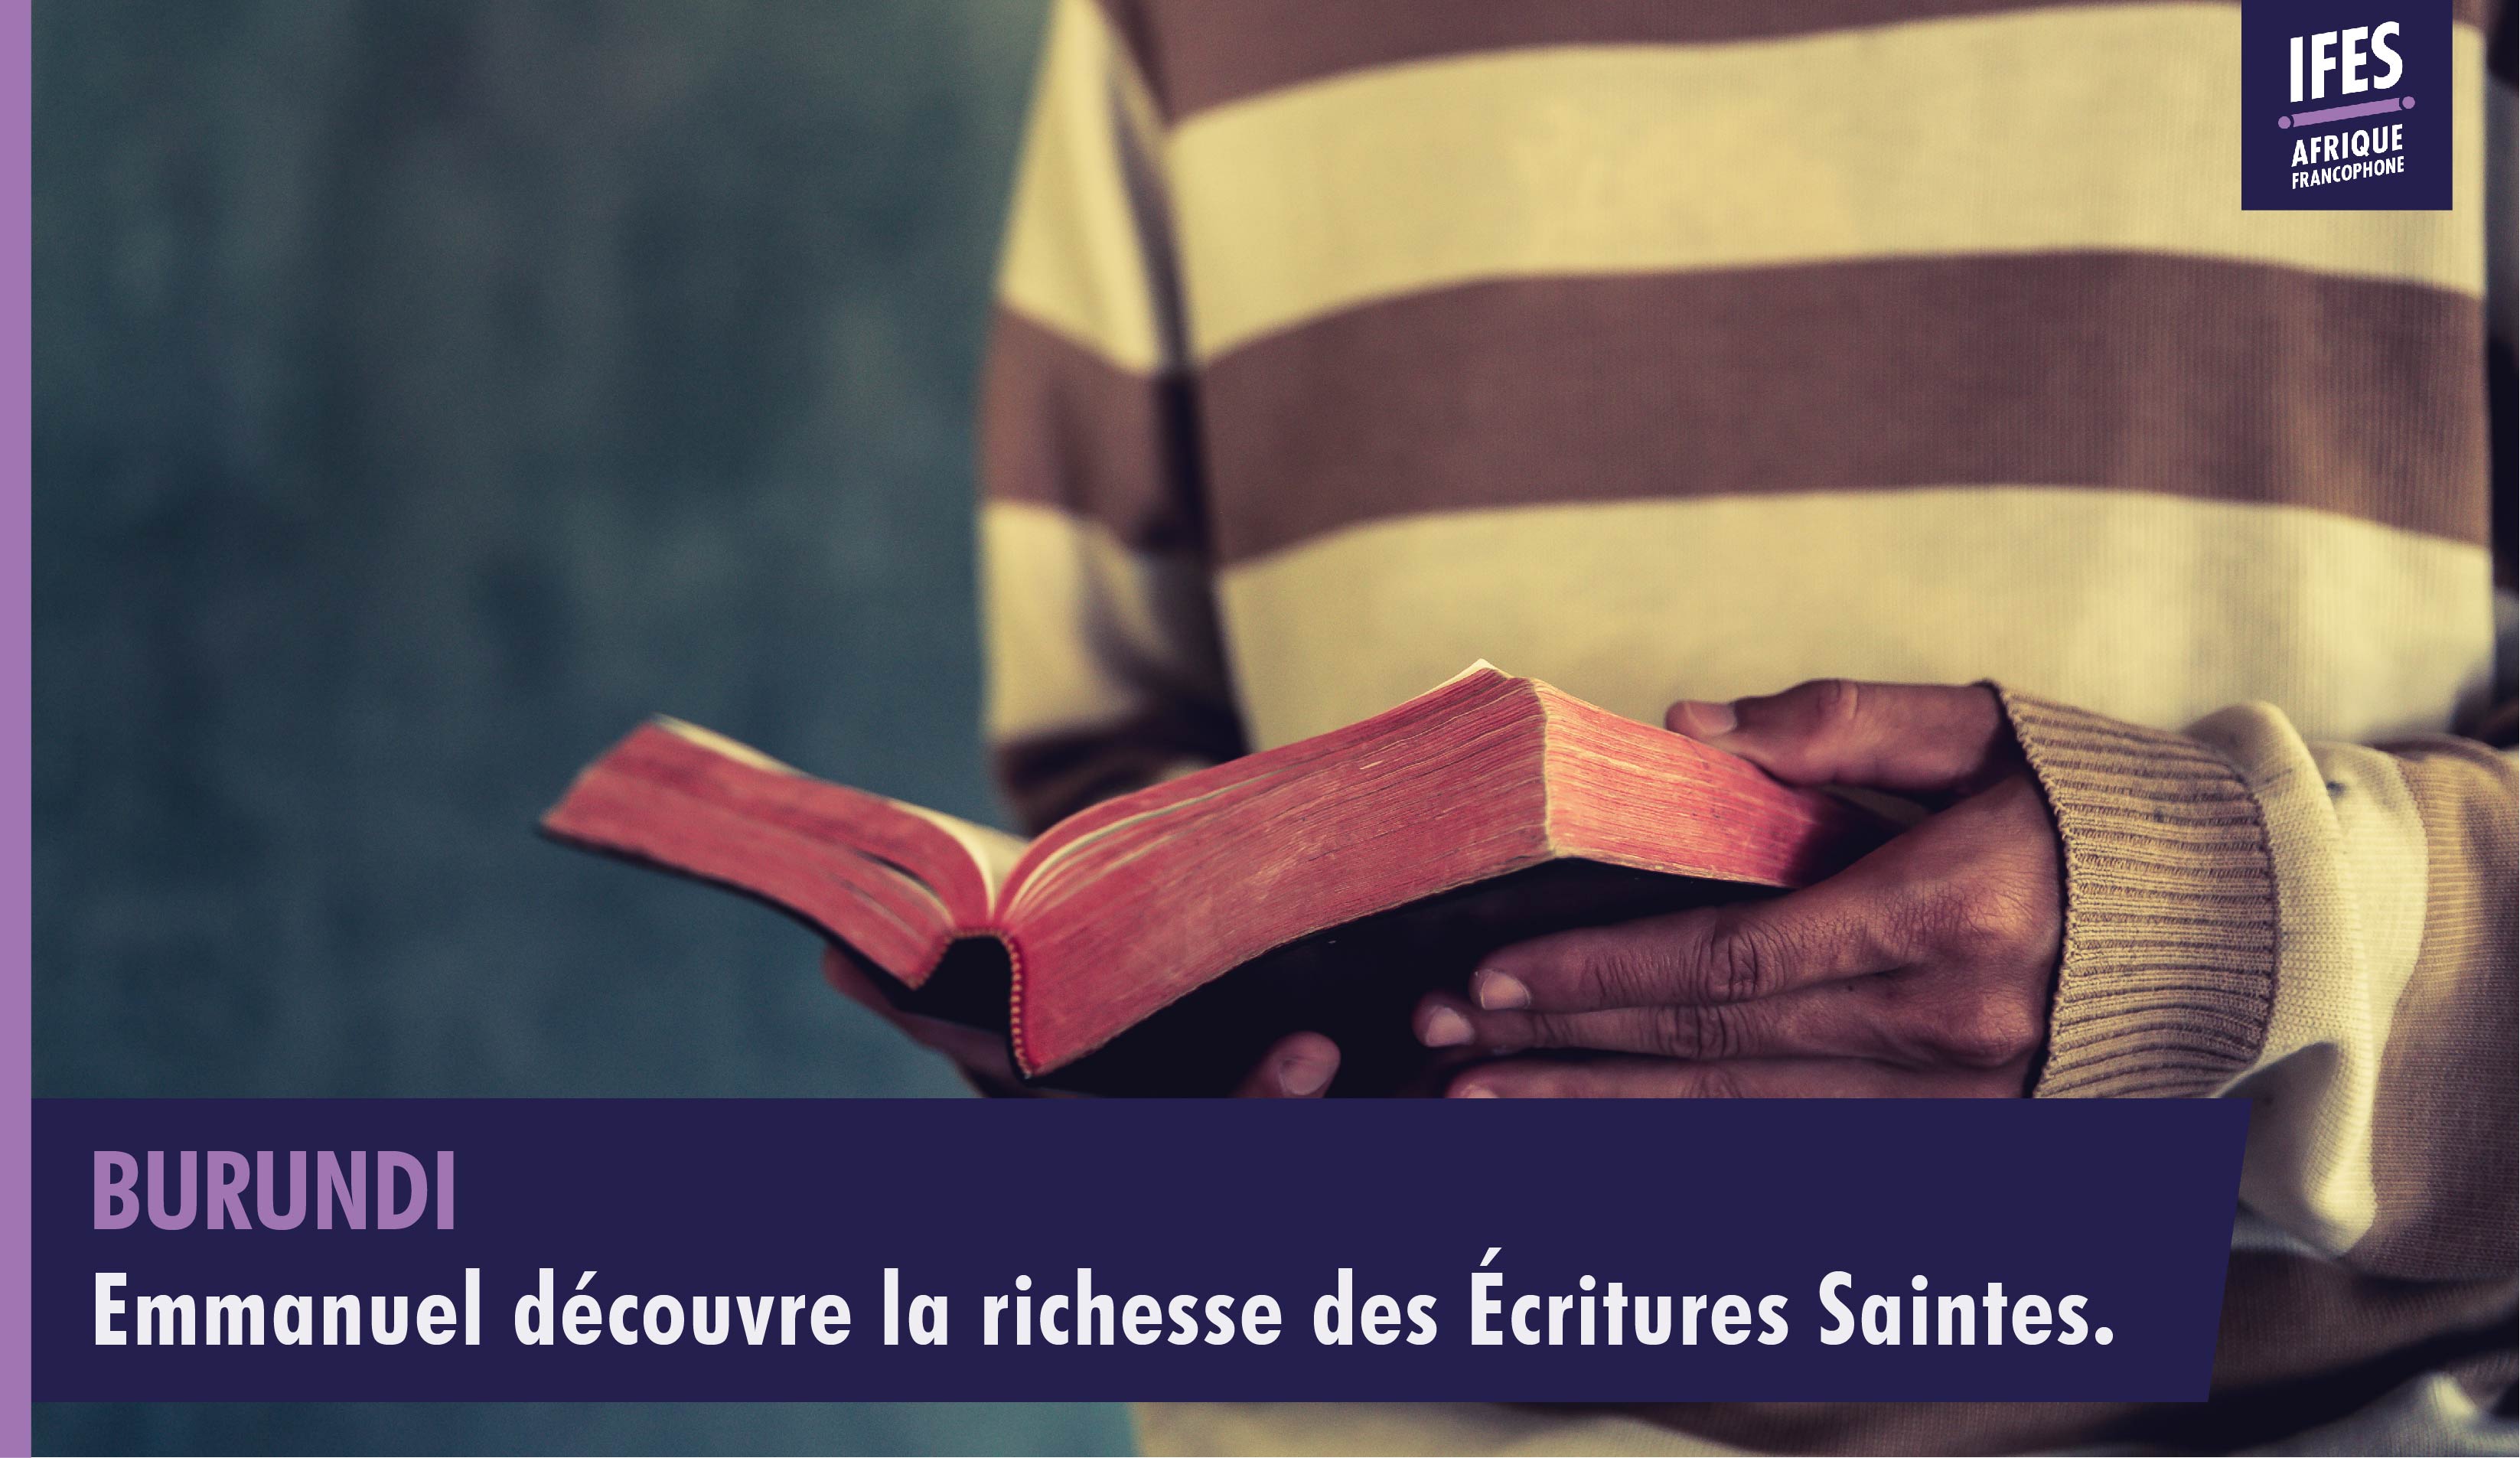 Emmanuel découvre la richesse des Écritures Saintes.